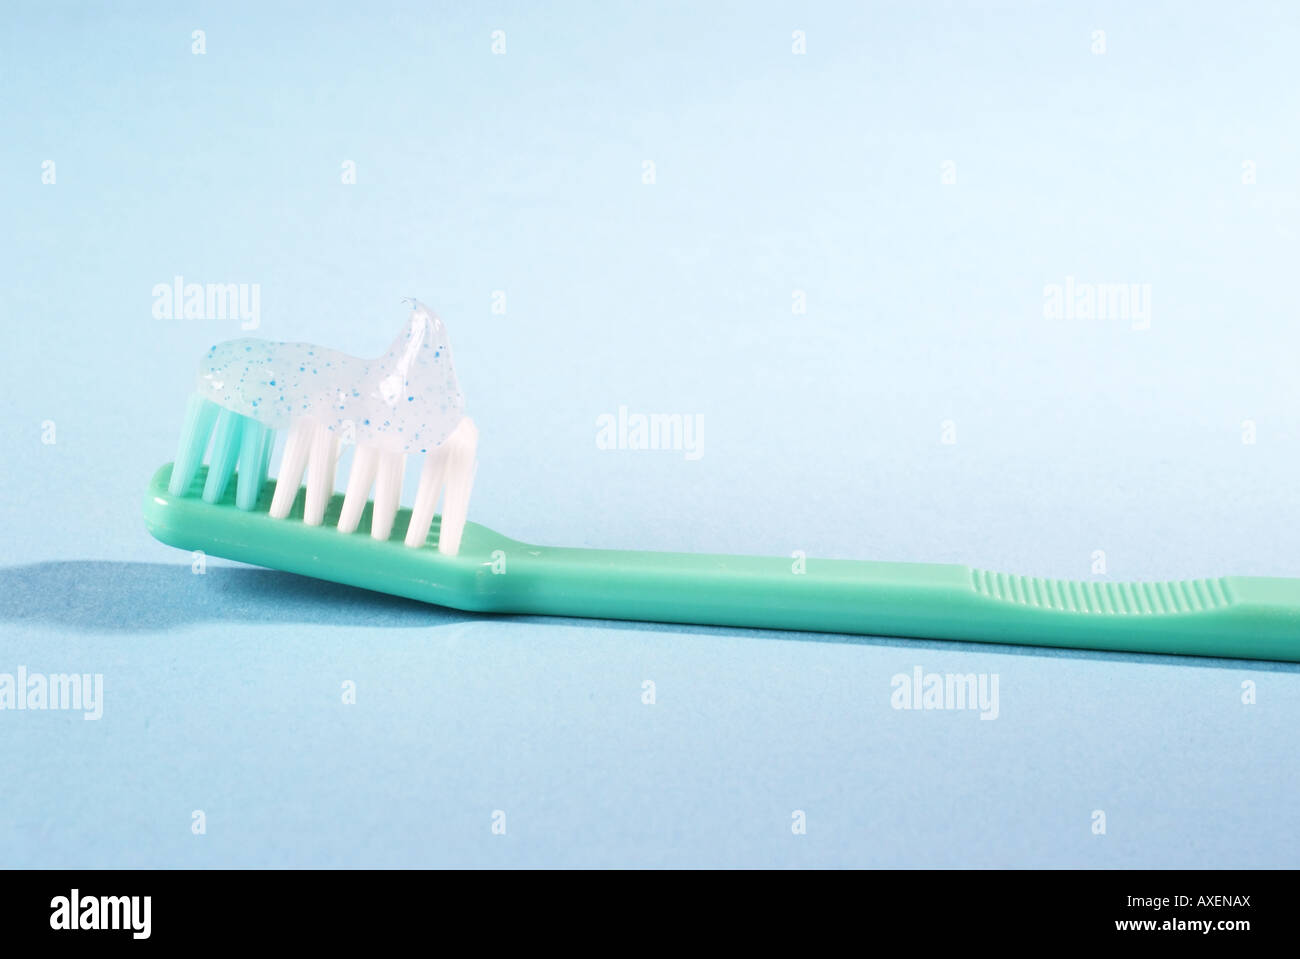 Toothbrush | Zahnbuersten Stock Photo